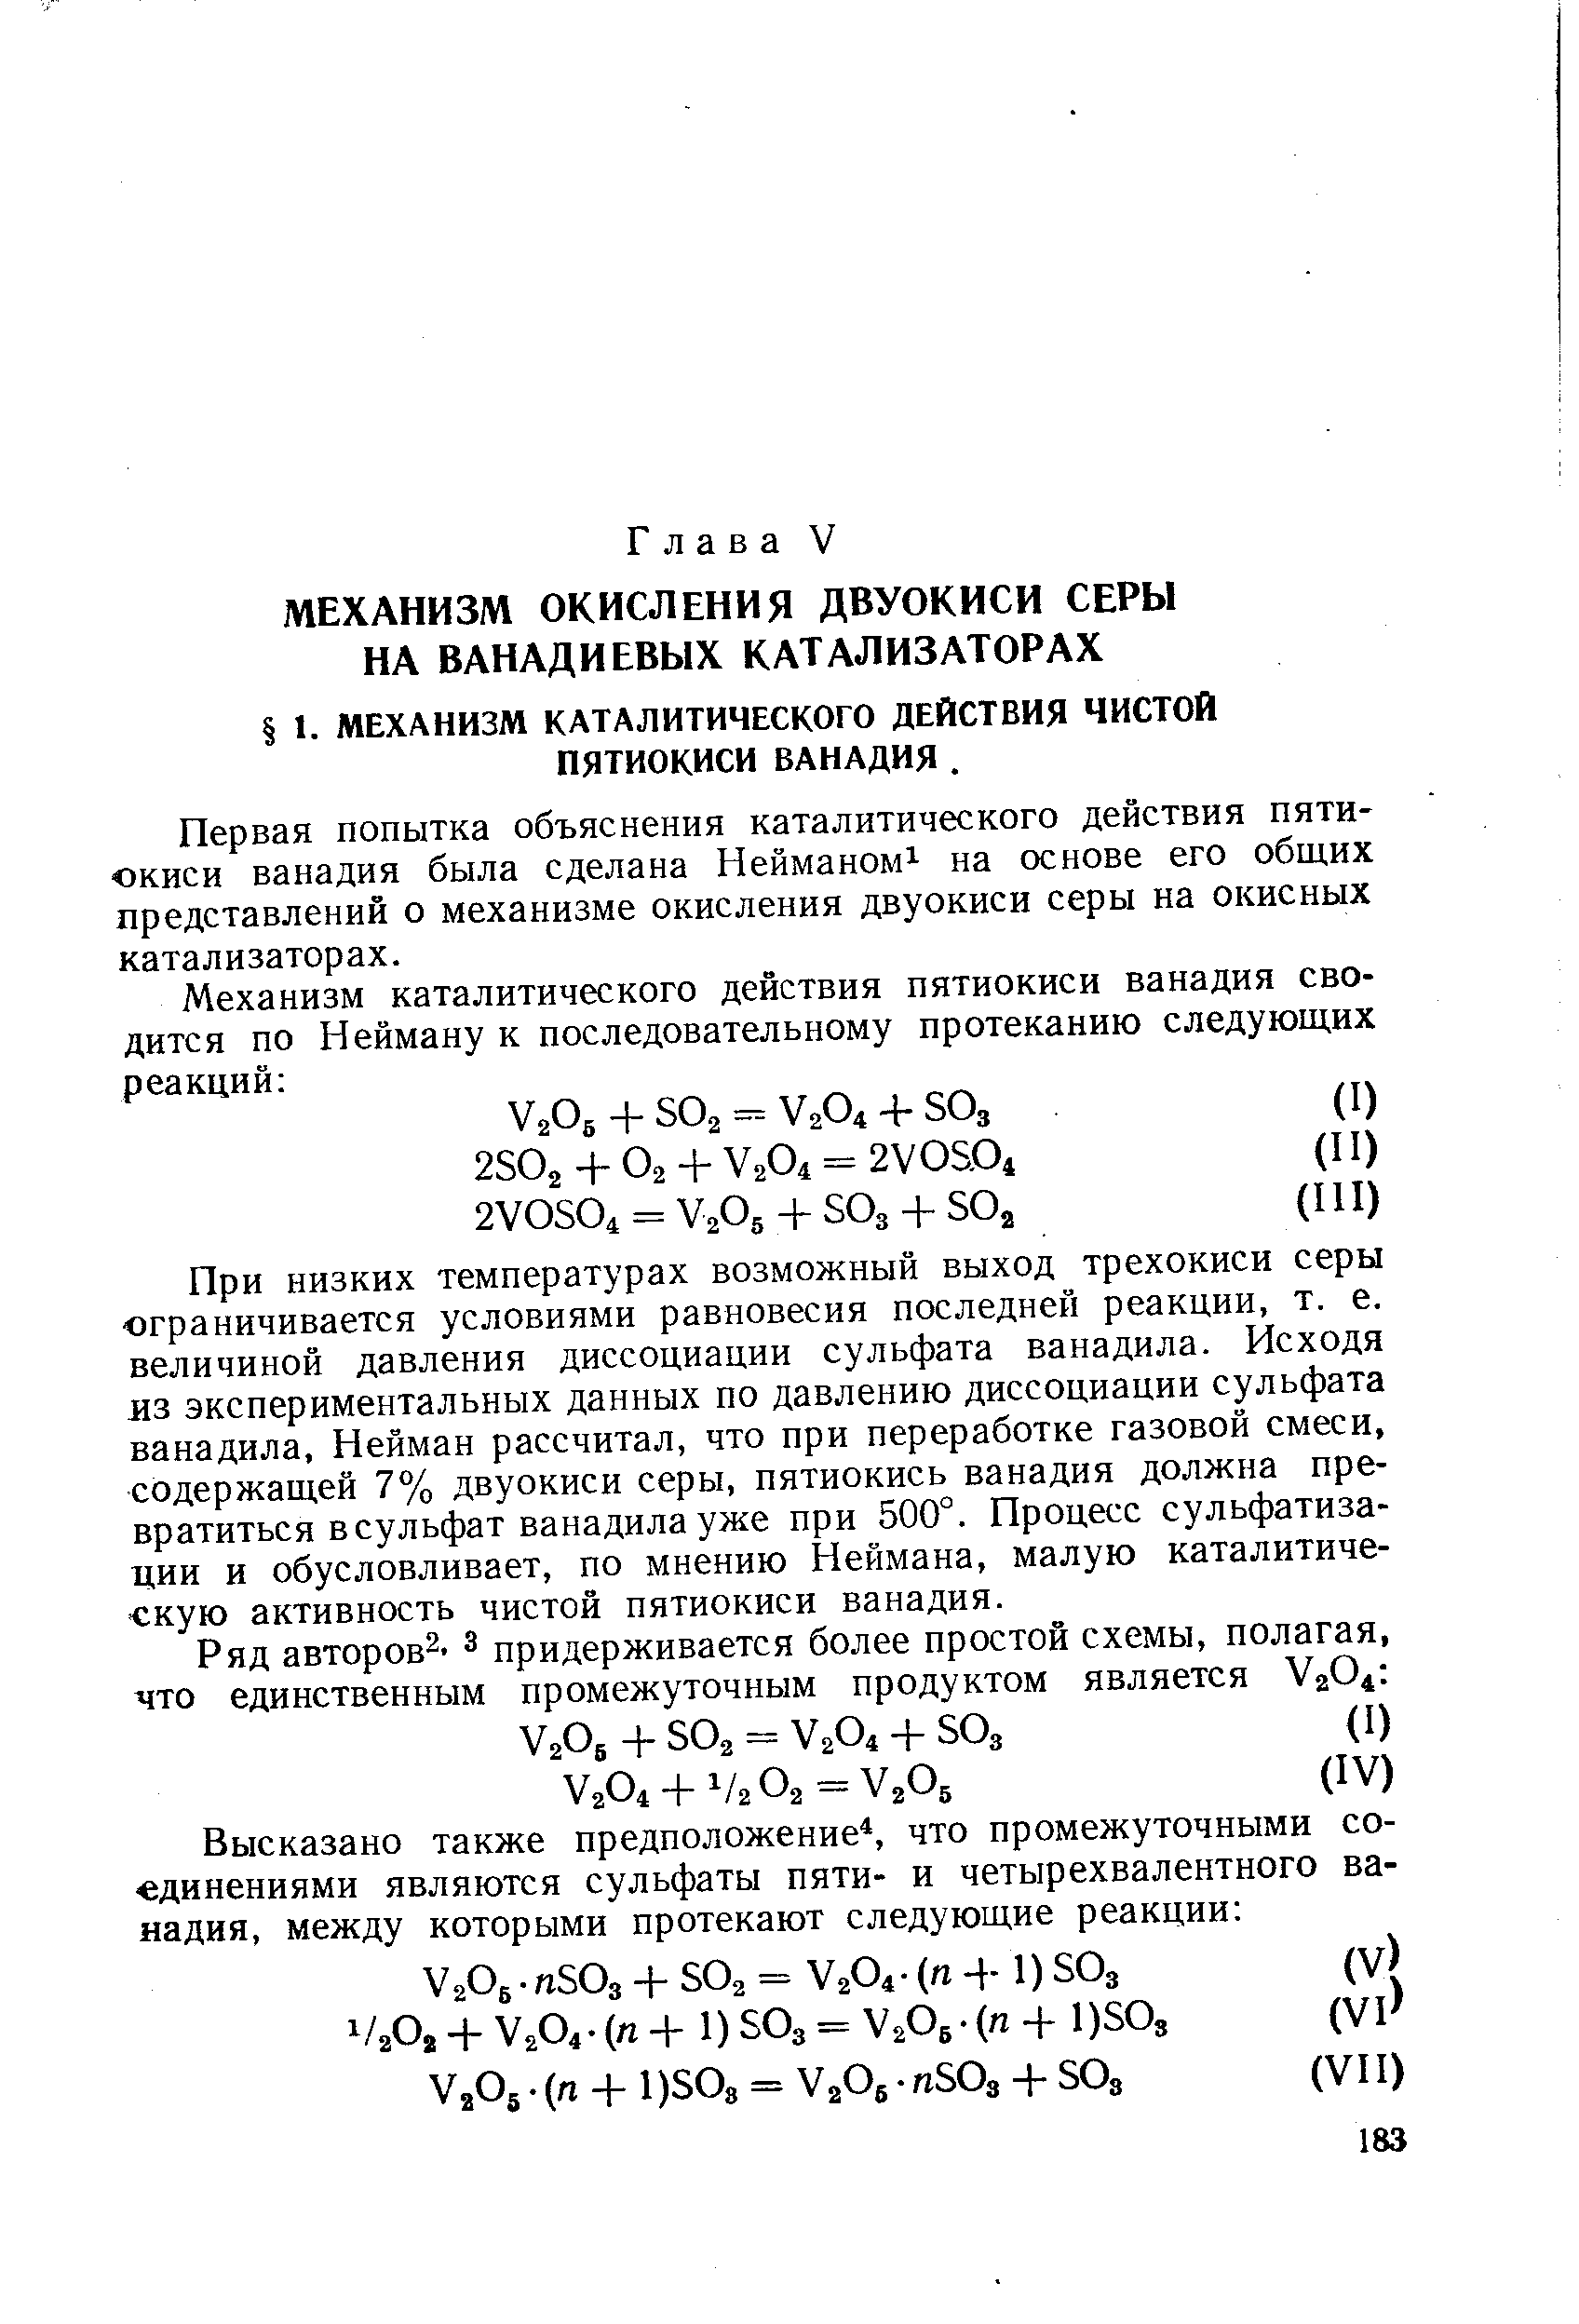 Первая попытка объяснения каталитического действия пятиокиси ванадия была сделана Нейманом на основе его общих представлений о механизме окисления двуокиси серы на окисных катализаторах.